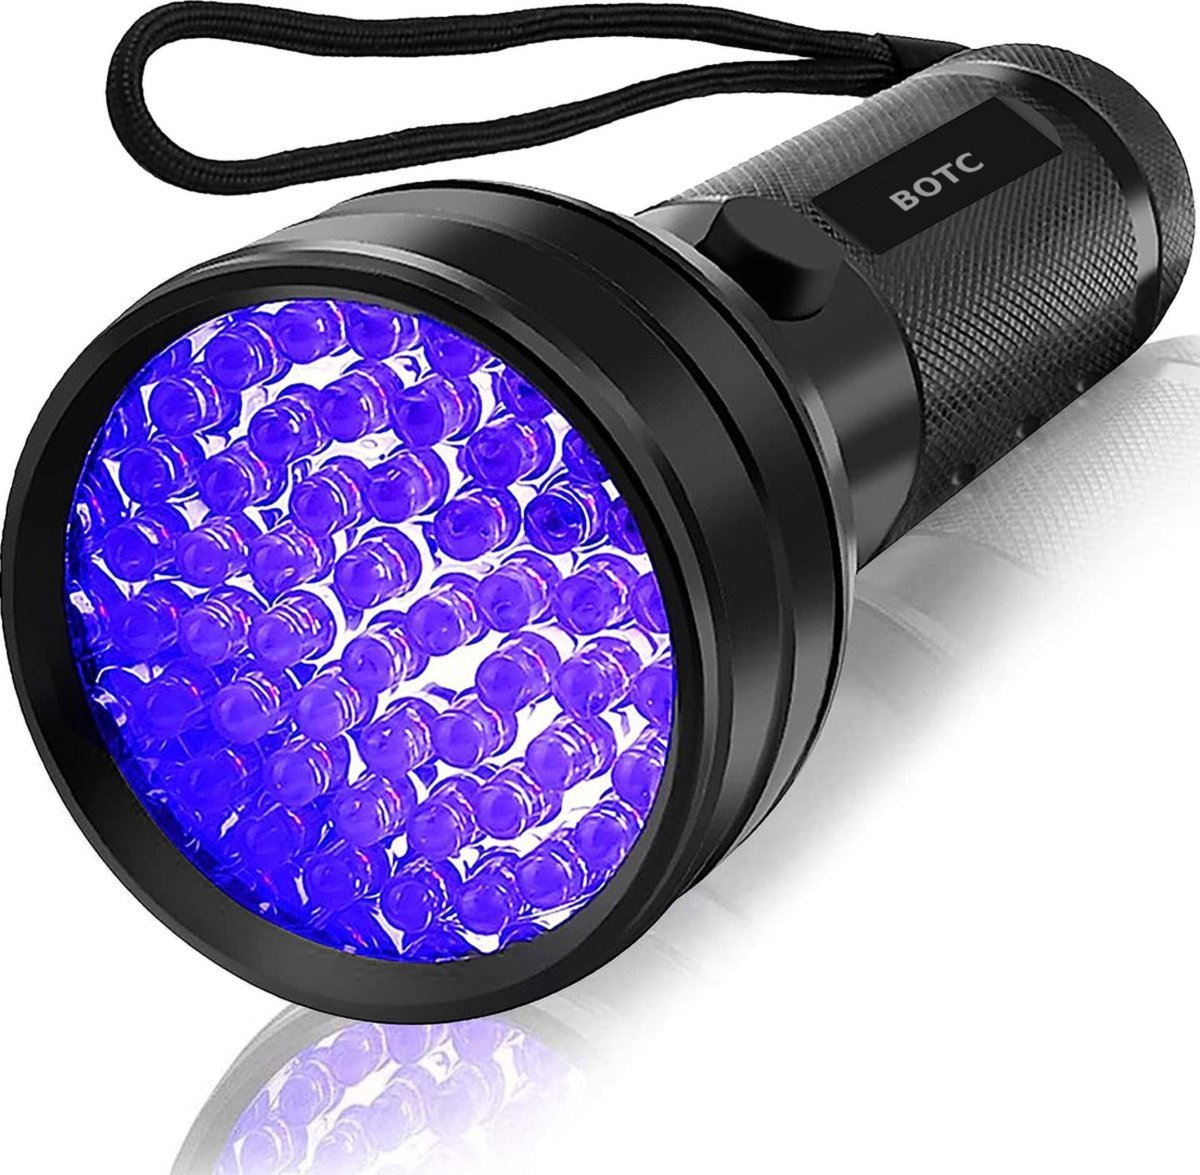 BOTC Zaklamp UV Licht - UV zaklamp - 51 Ultra Violet LED's - Blacklight zaklamp - Zwart